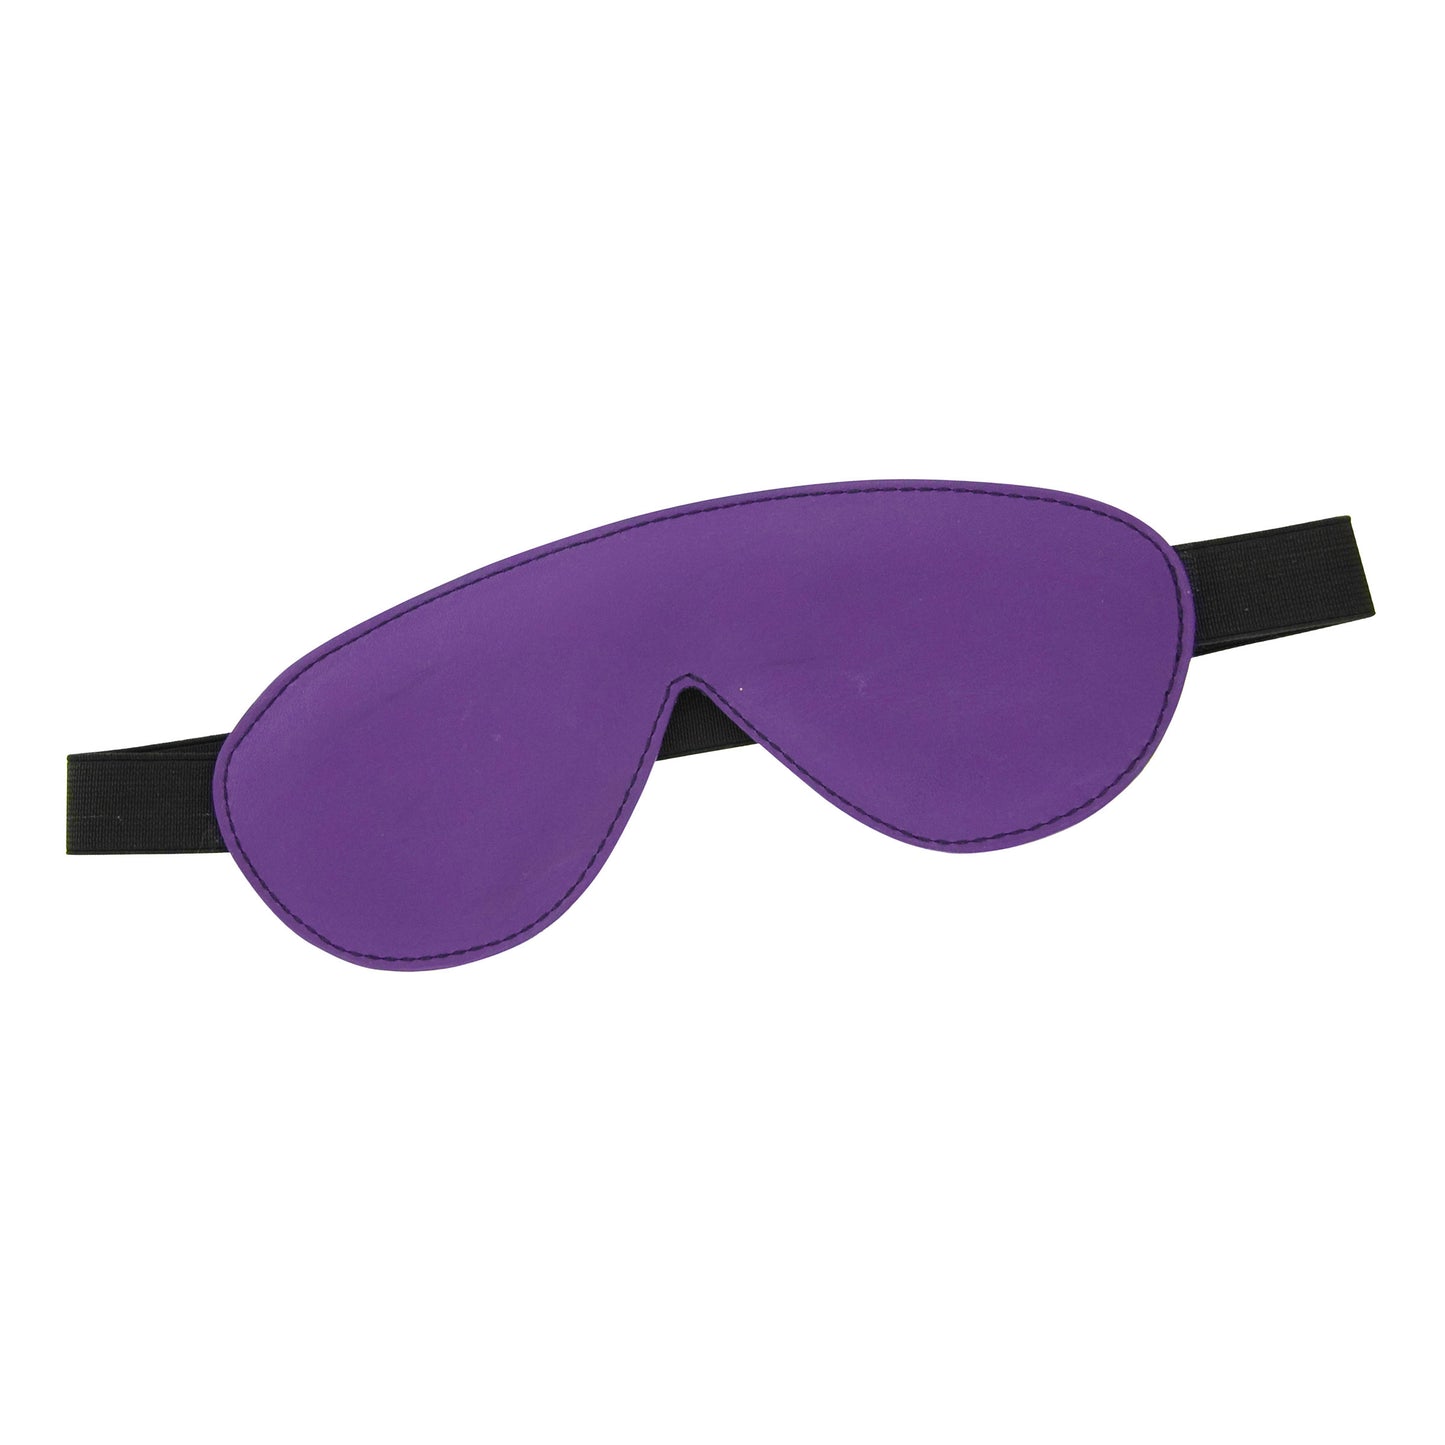 Blindfold Padded Leather - Purple and Black - UABDSM